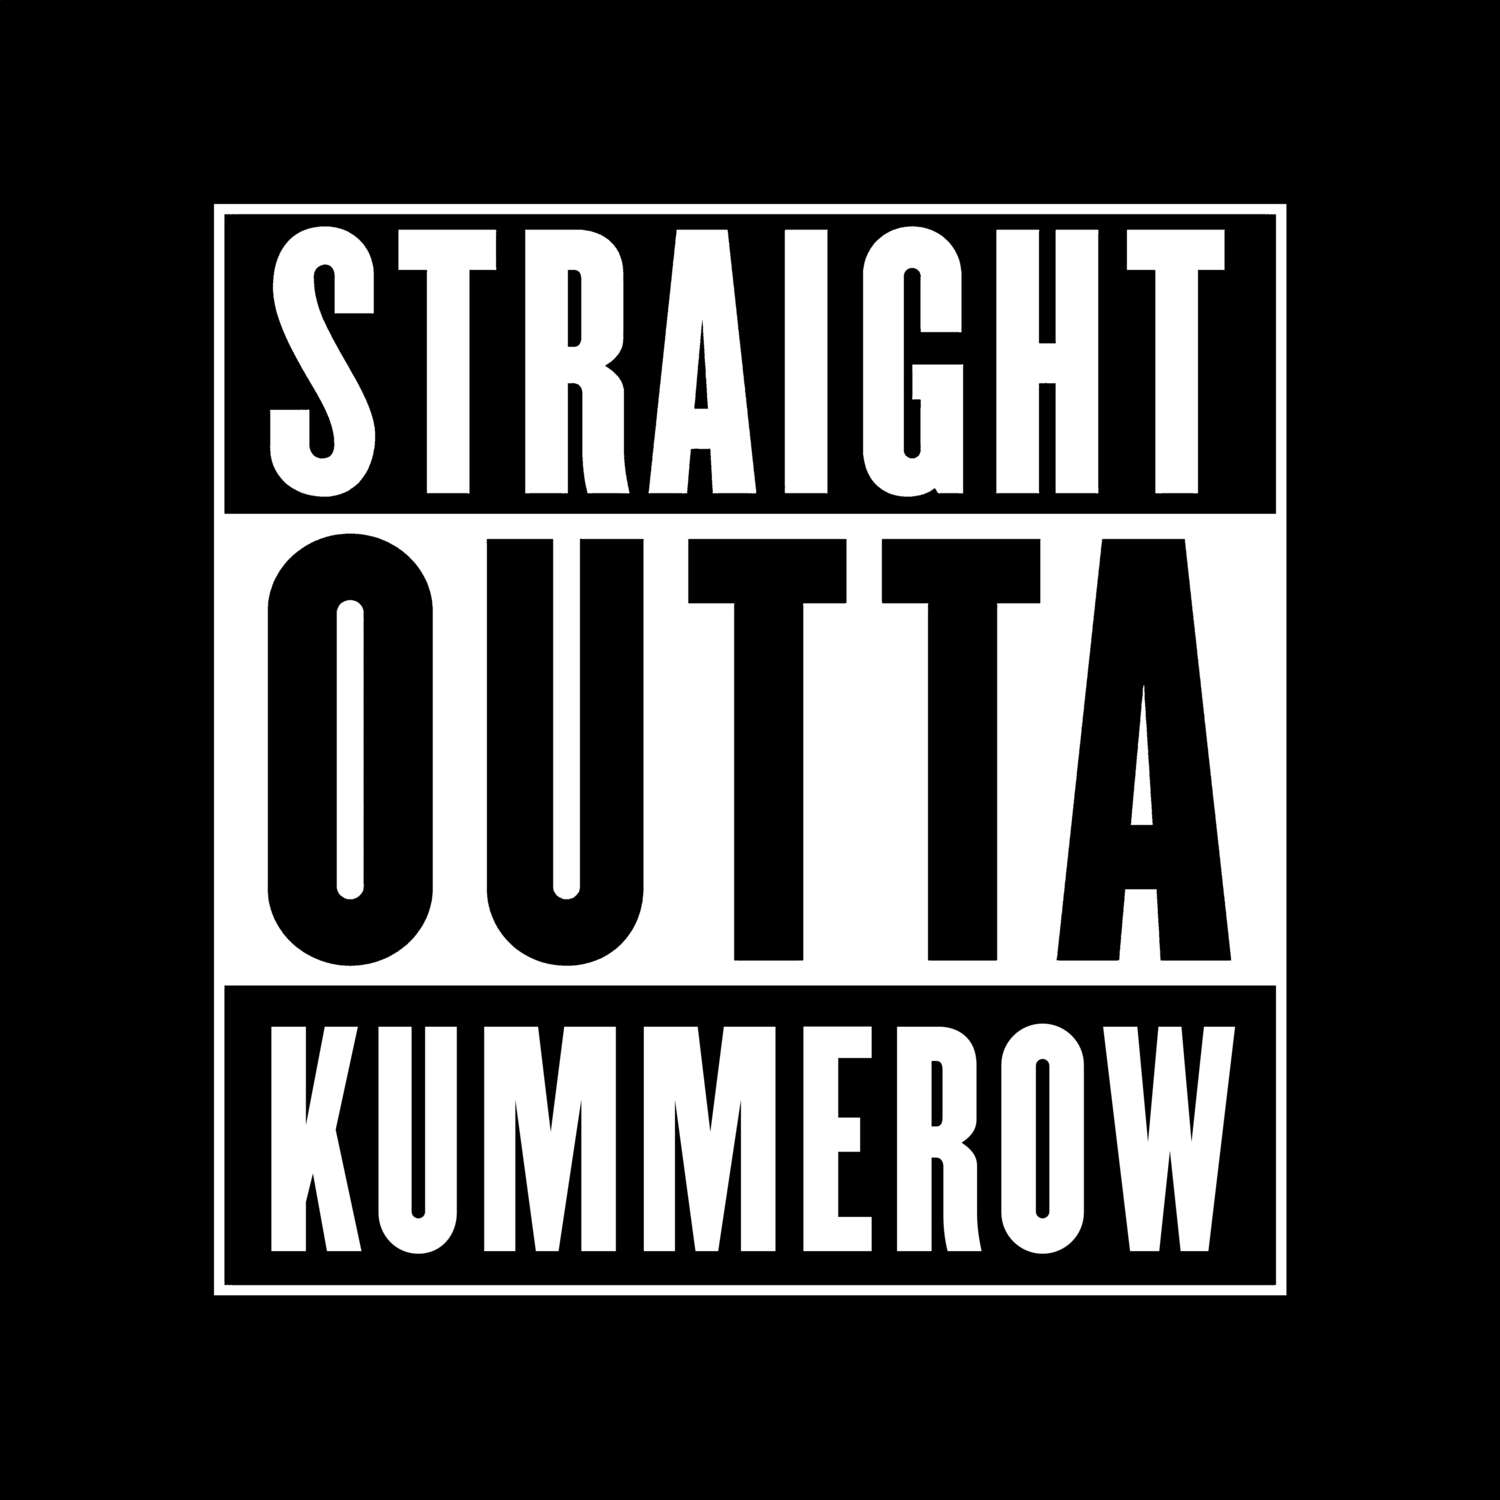 Kummerow T-Shirt »Straight Outta«